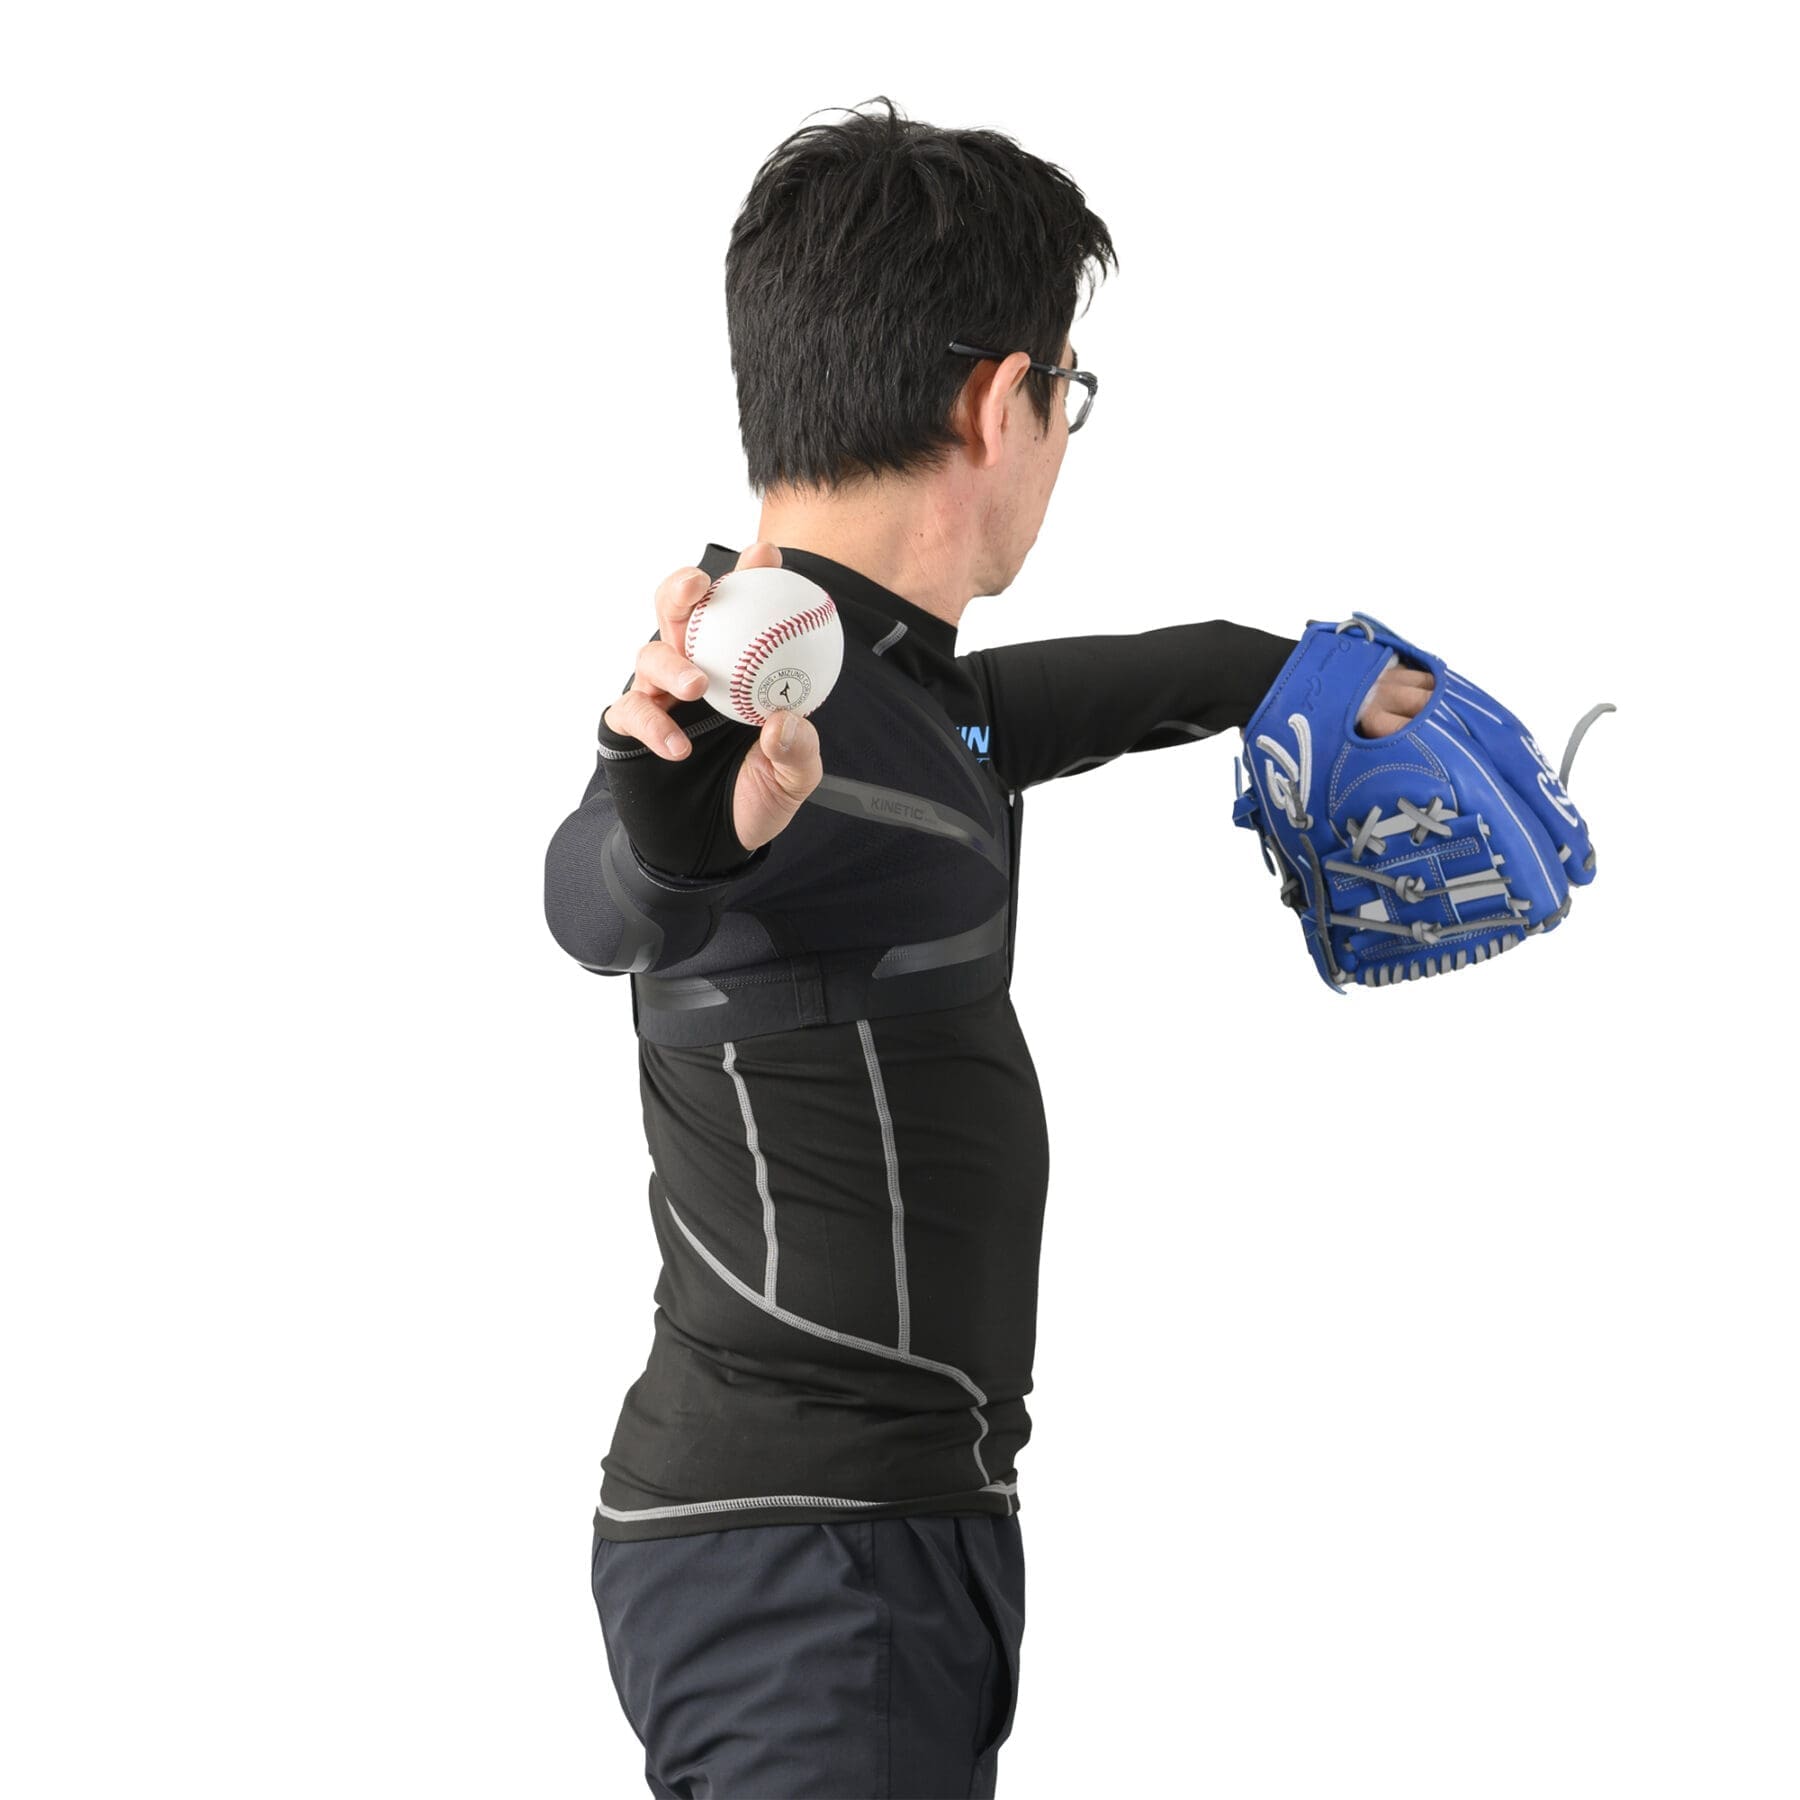 キネティックアーム・K2モデル：Kinetic Arm K2 model – 野球トレーニング用品 – USA Baseball